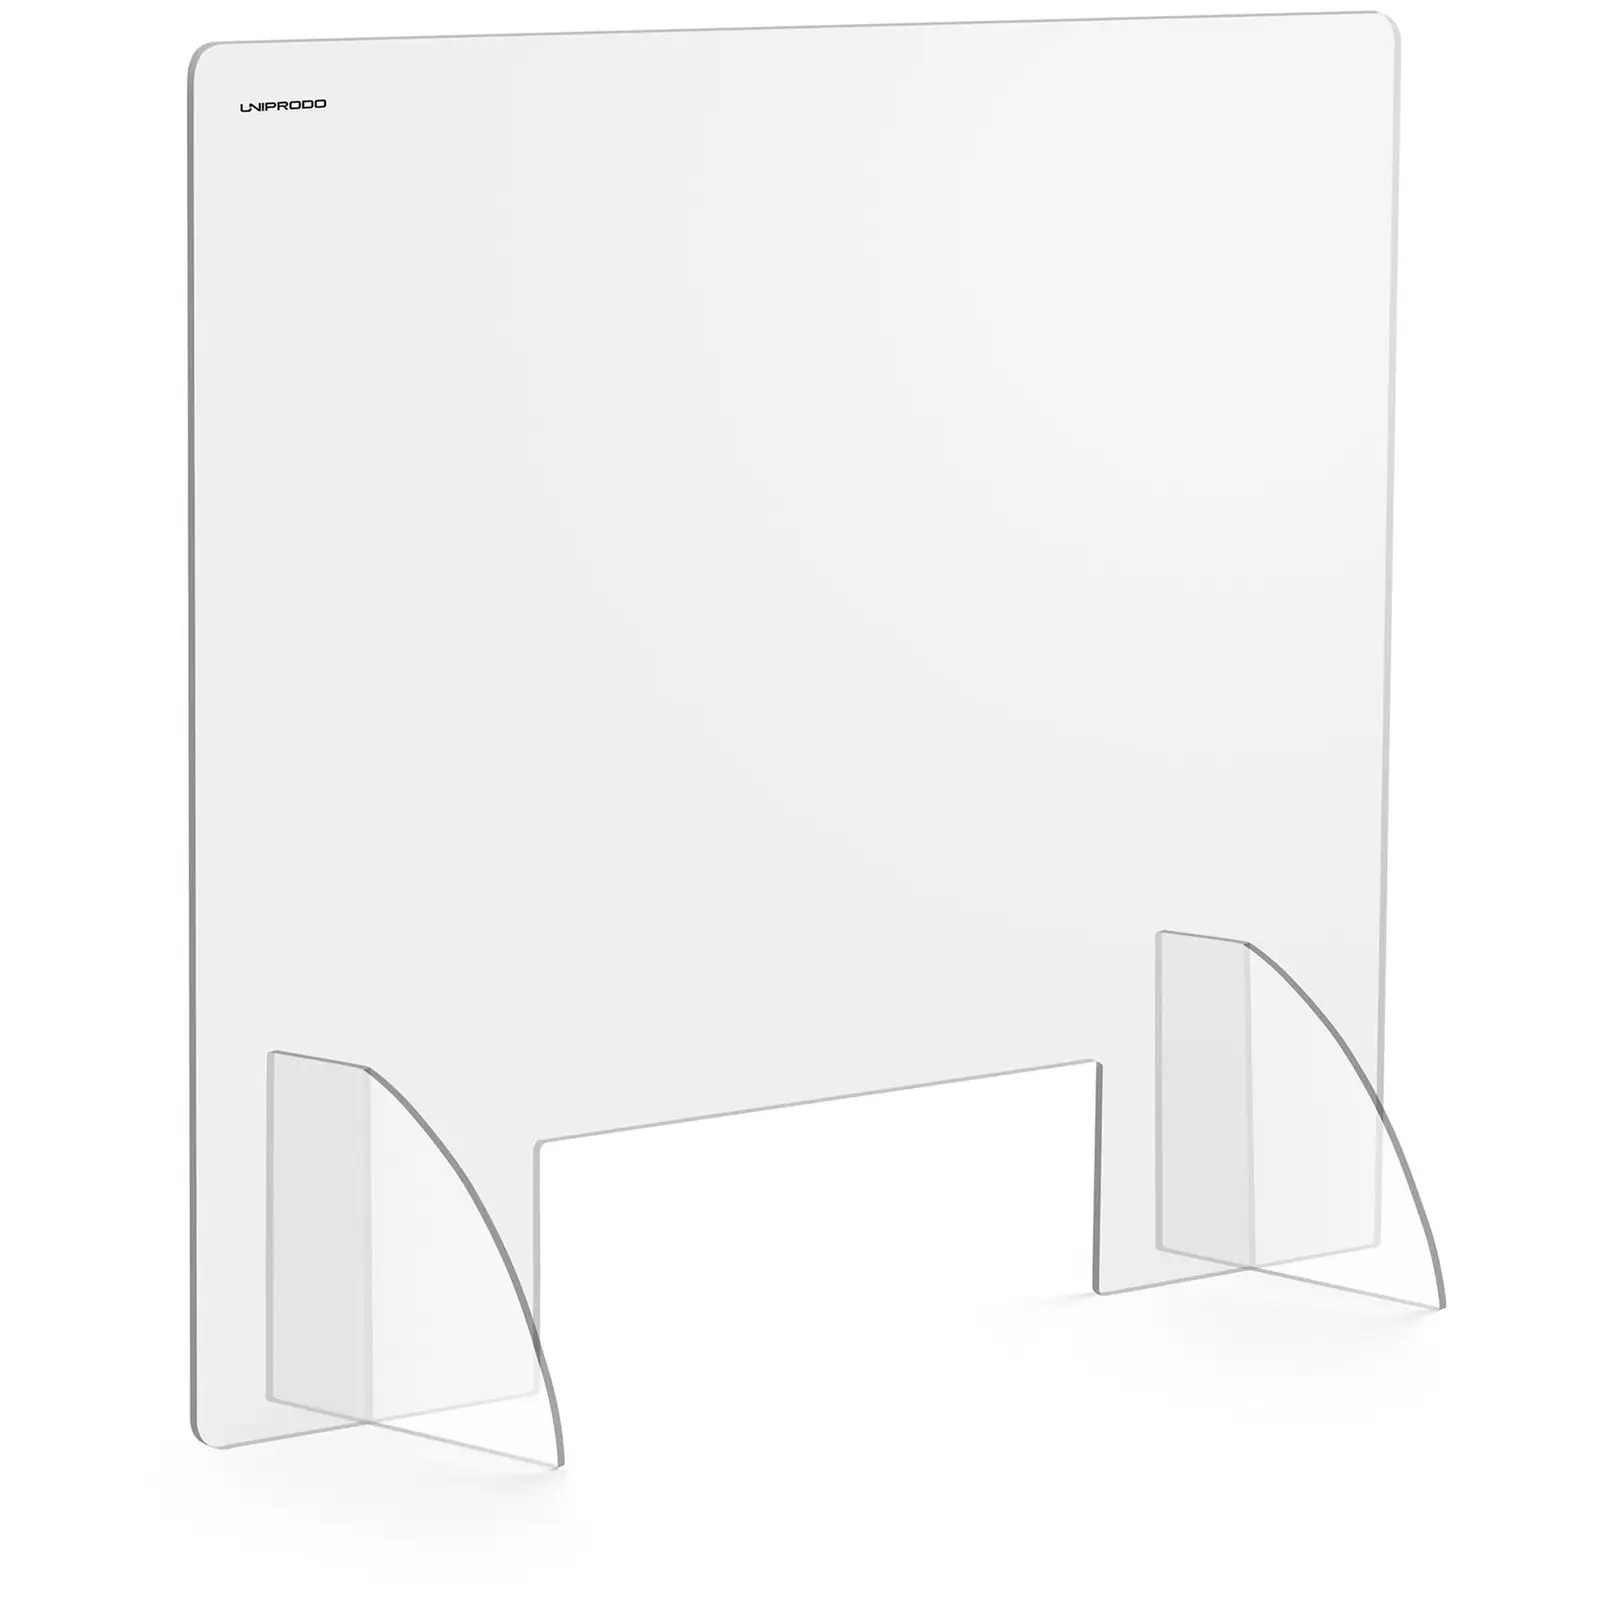 Levně Ochranná přepážka 95 x 80 cm akrylátové sklo výdejové okénko 30 x 10 cm - Ochranné pracovní pomůcky Uniprodo